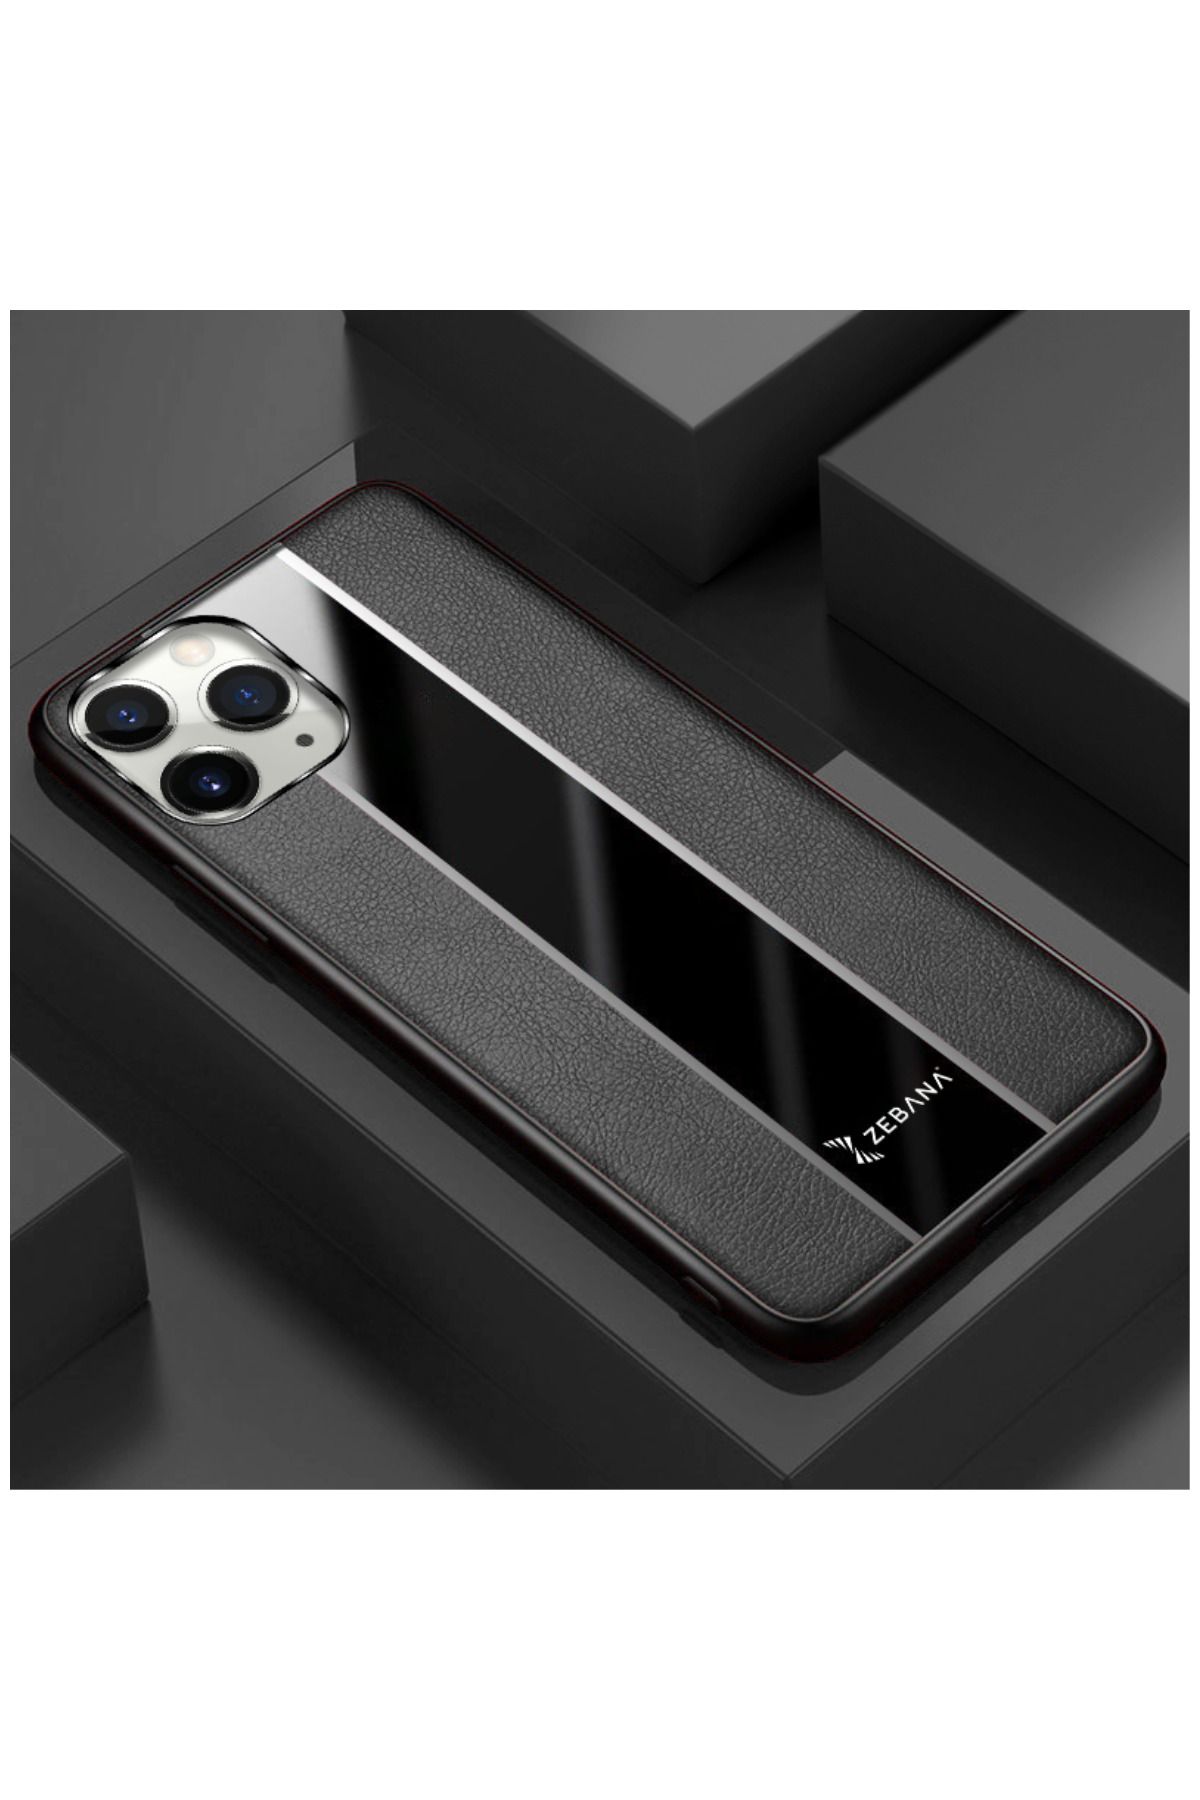 Dara Aksesuar Apple Iphone 11 Pro Max Uyumlu Kılıf Zebana Premium Deri Kılıf Siyah